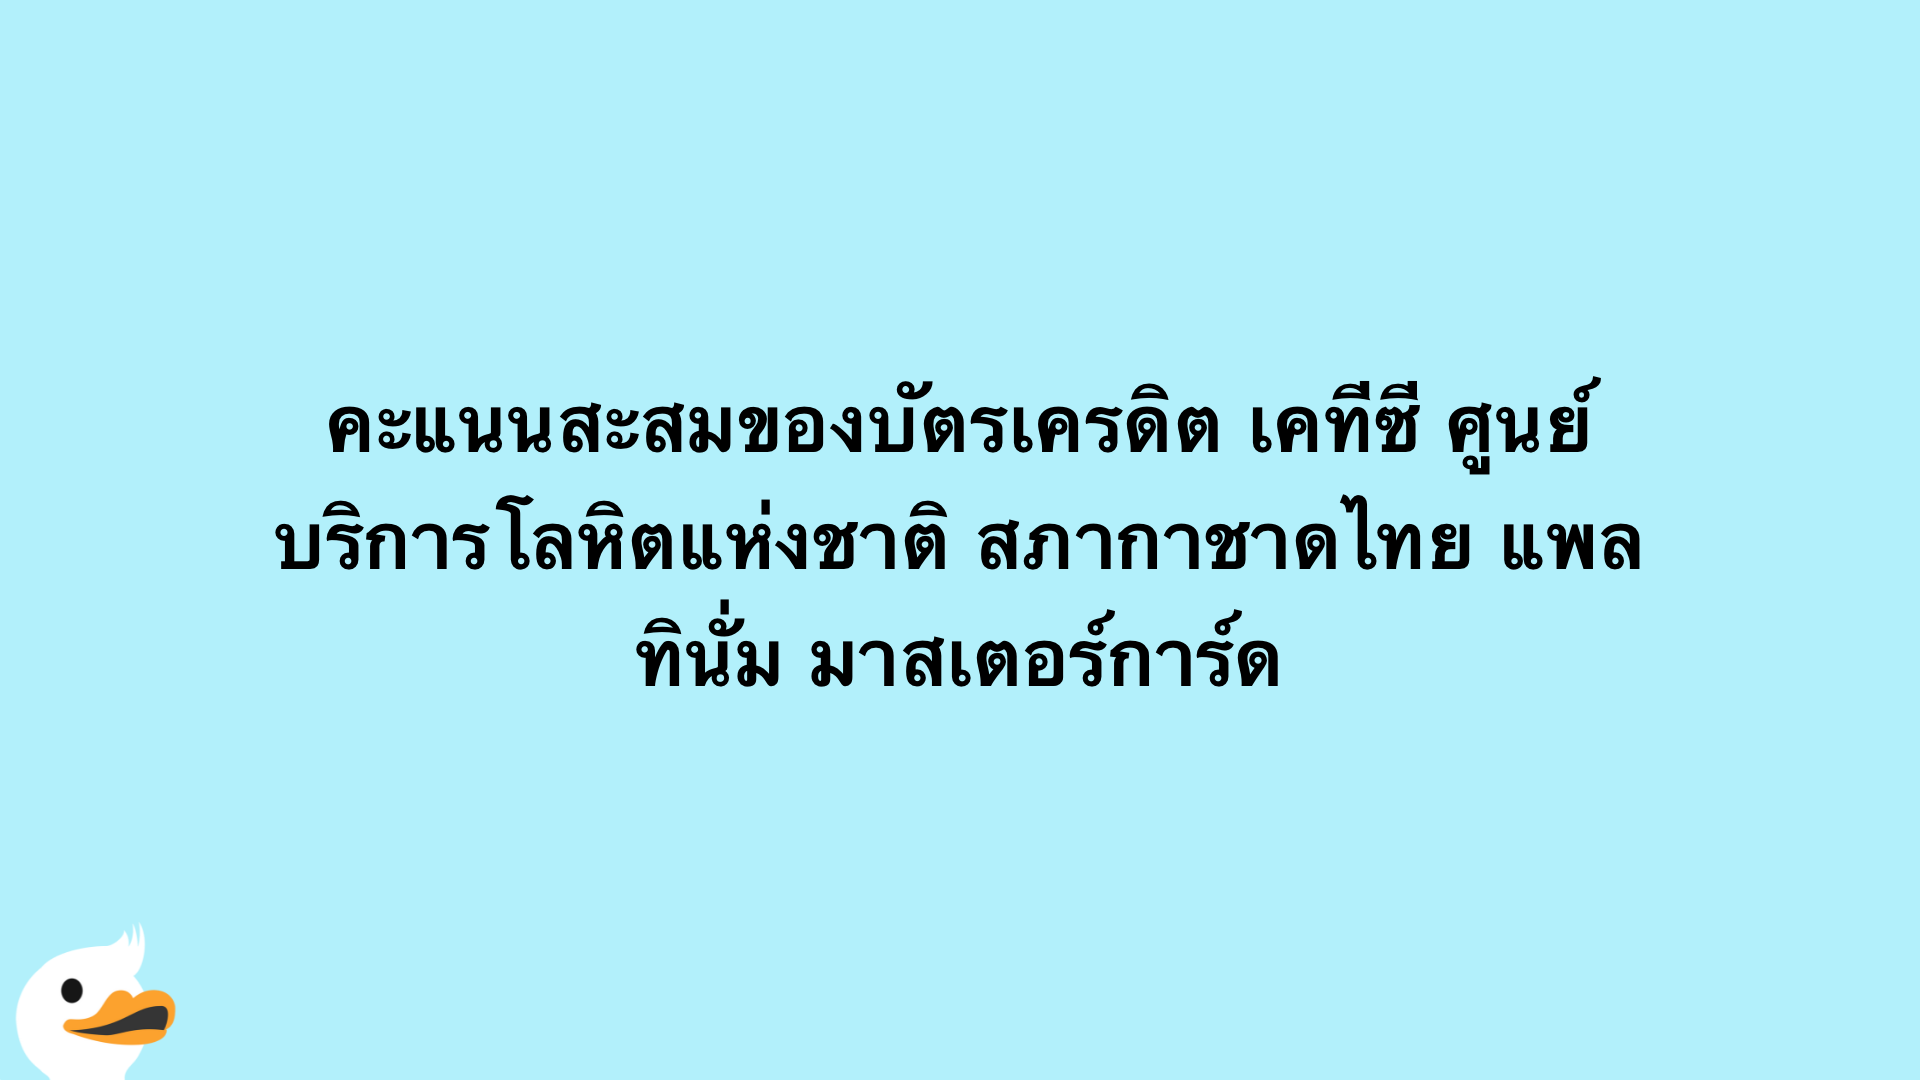 คะแนนสะสมของบัตรเครดิต เคทีซี ศูนย์บริการโลหิตแห่งชาติ สภากาชาดไทย แพลทินั่ม มาสเตอร์การ์ด